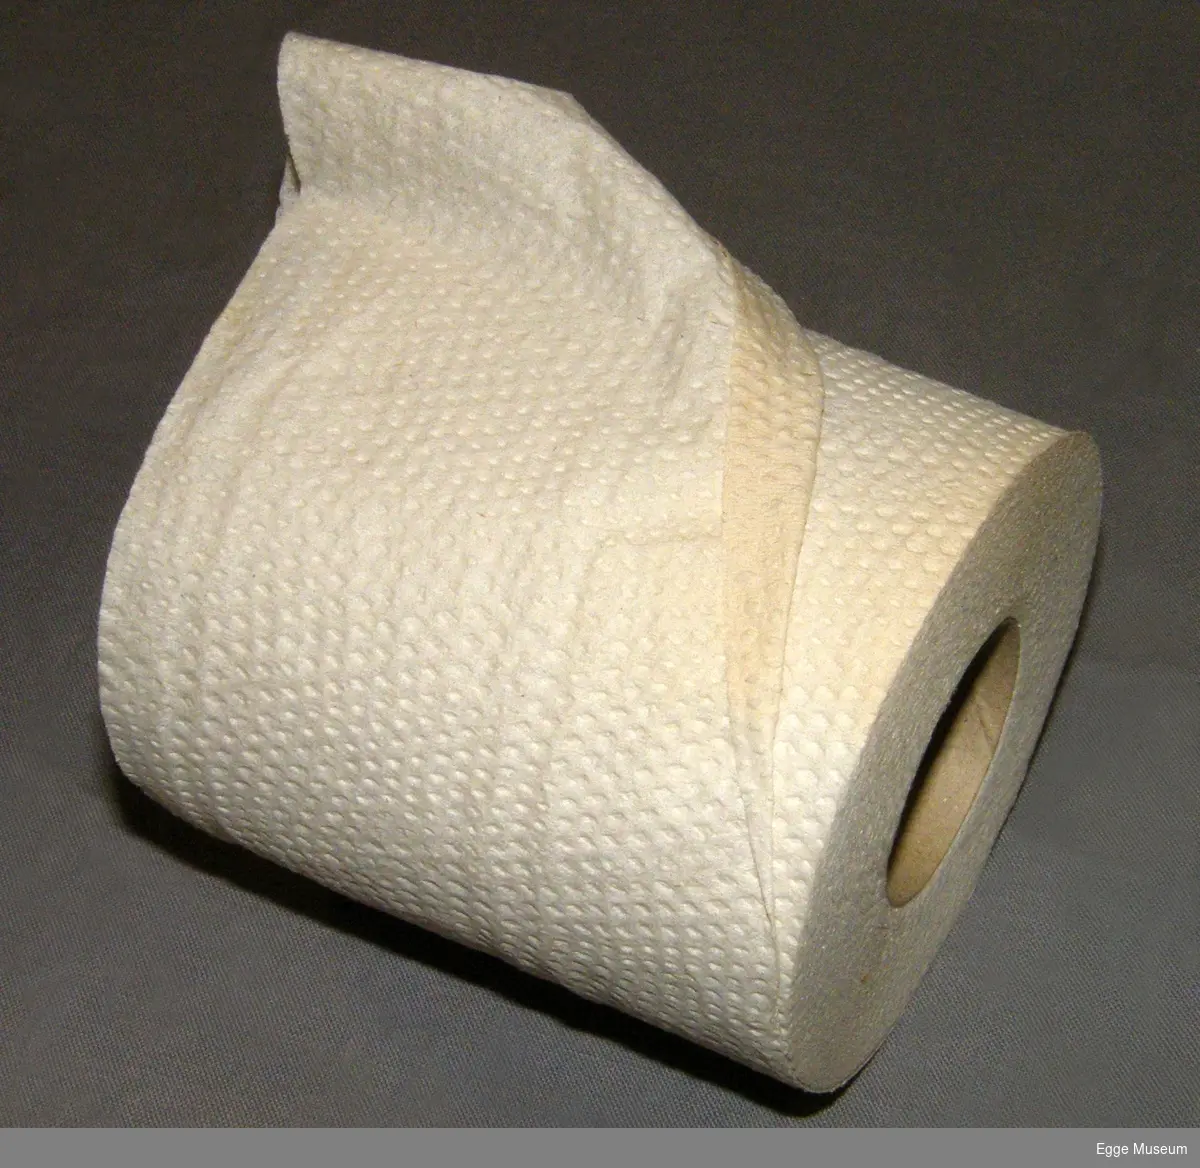 Rull med toalettpapir/dopapir, produkt fra treforedlingsindustrien. Usikker produsent. Mykpapir (tissue) er en type papir som anvendes til hygieneformål osv. Lages av kjemisk papirmasse eller returfiber avhengig av kvalitet. Produktet er kreppet. 

Brukt i undervisninga ved Skogskolen på Steinkjer.